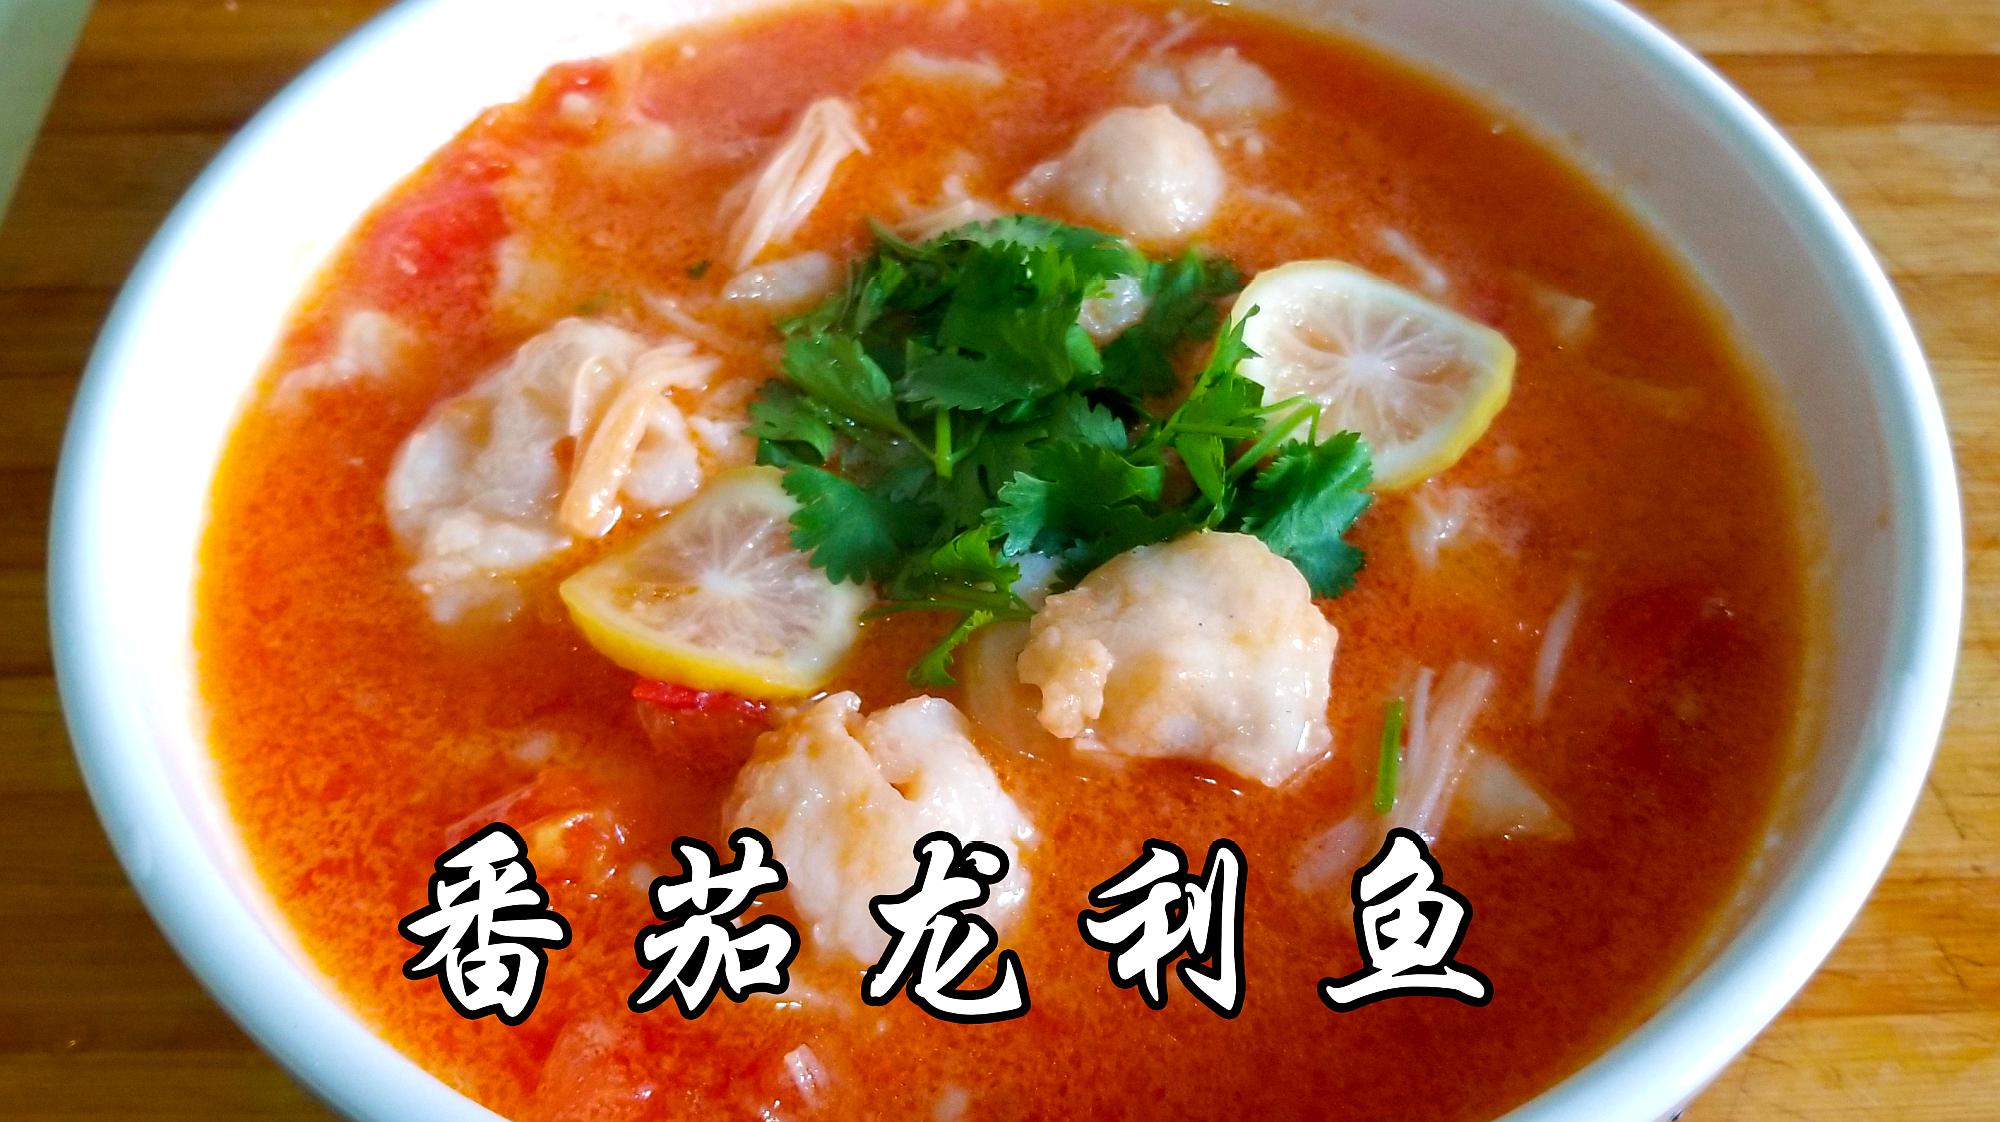 番茄酸汤龙利鱼,番茄酸汤龙利鱼的家常做法 - 美食杰番茄酸汤龙利鱼做法大全